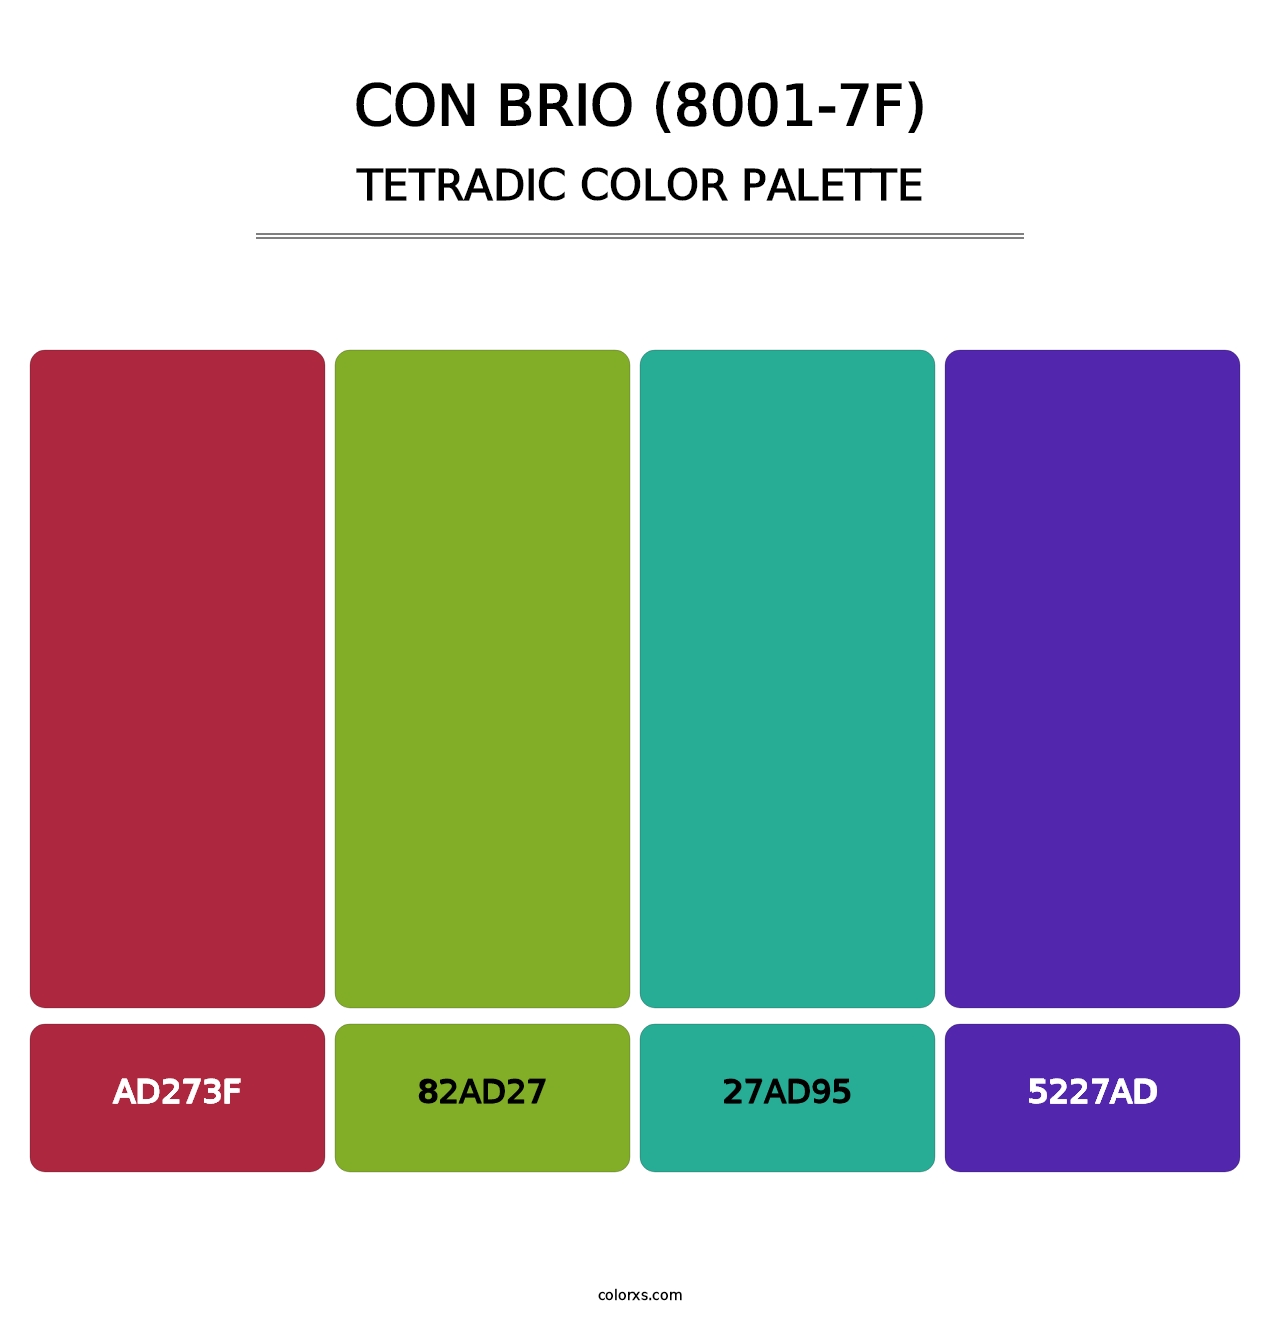 Con Brio (8001-7F) - Tetradic Color Palette